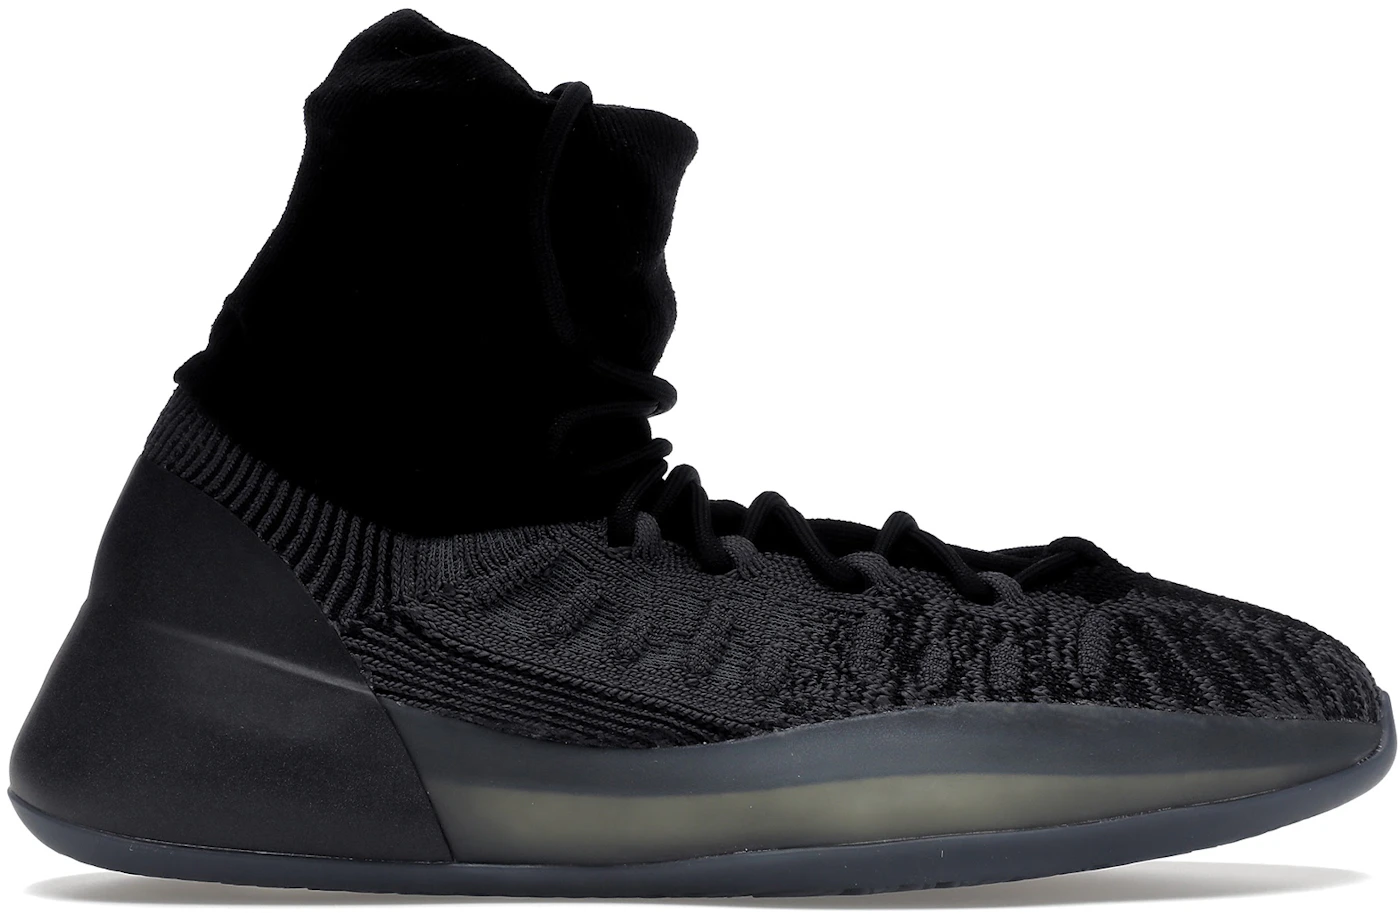 adidas Yeezy Basketball Shoe